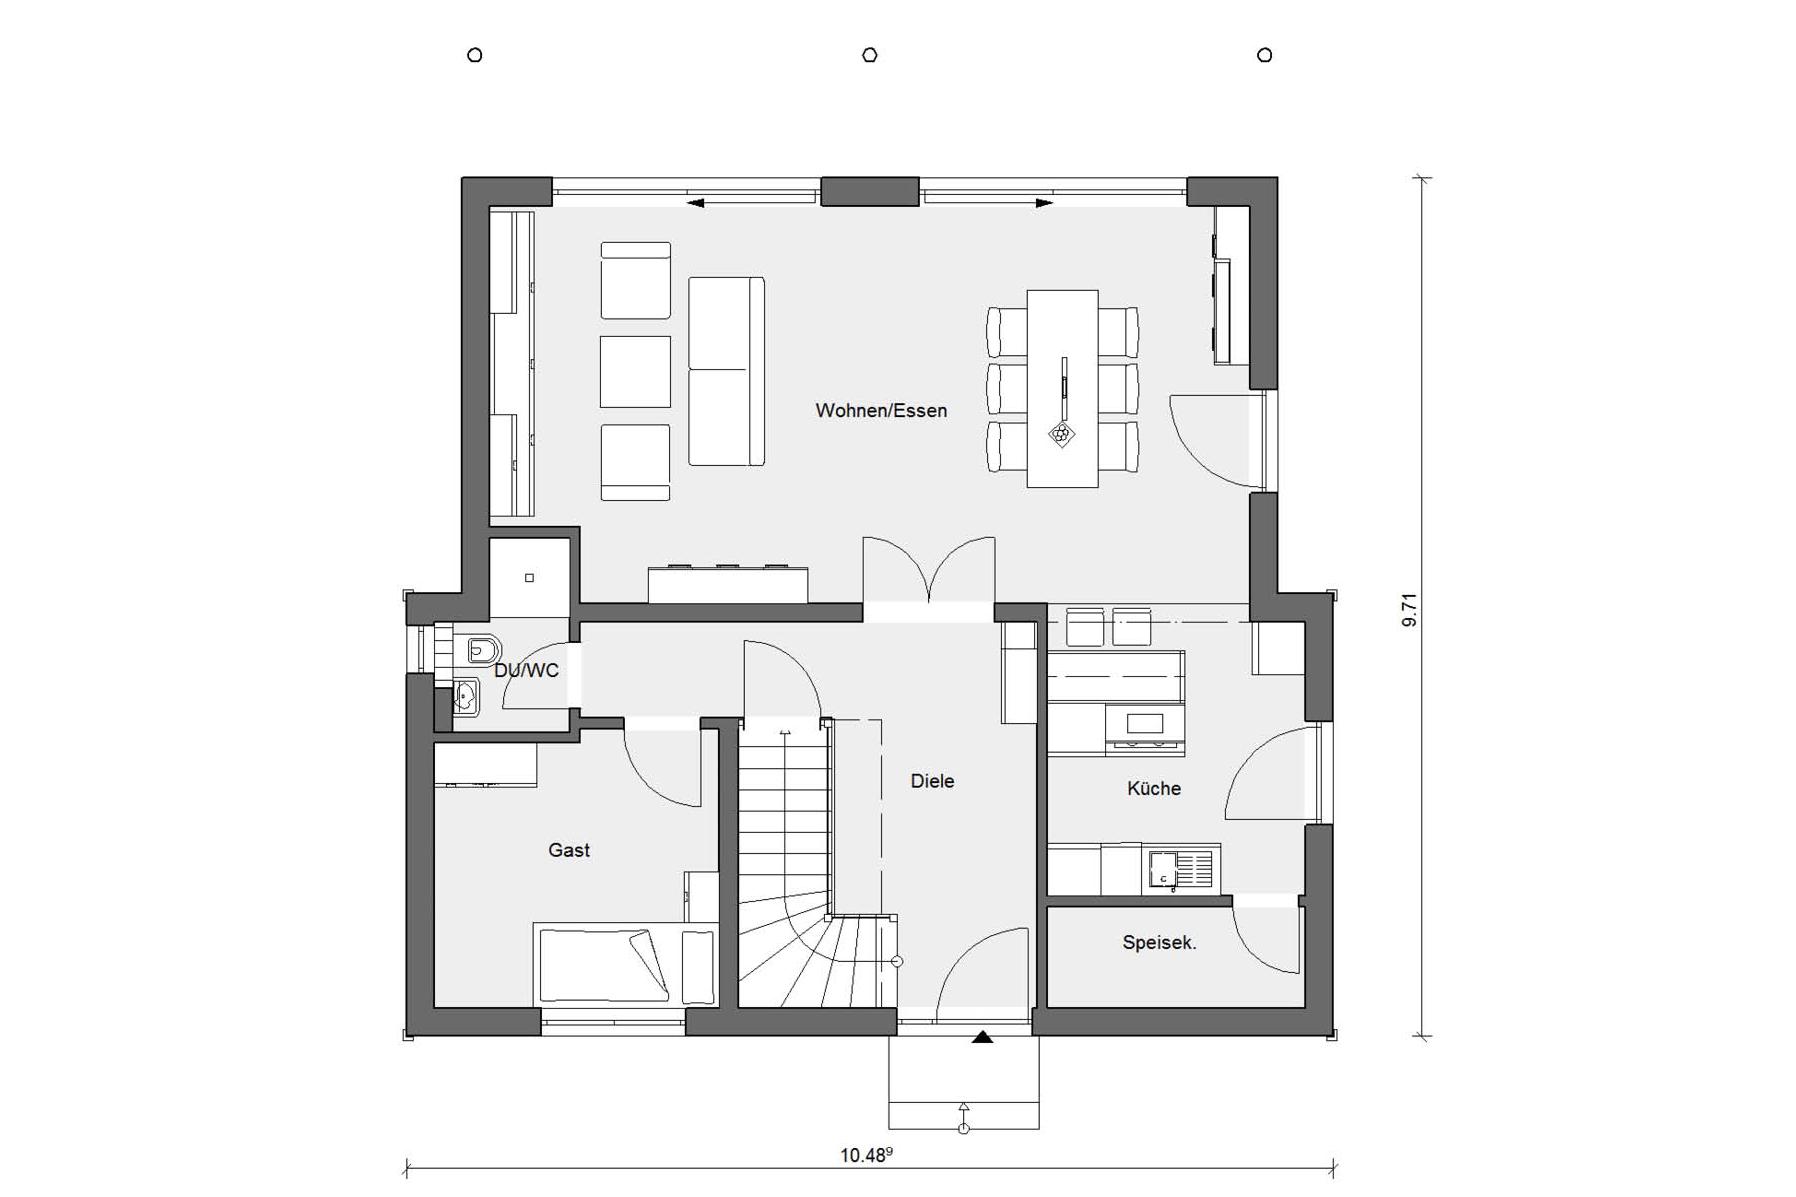 Plan d'étage rez-de-chaussée maison de famille moderne E 20-158.1